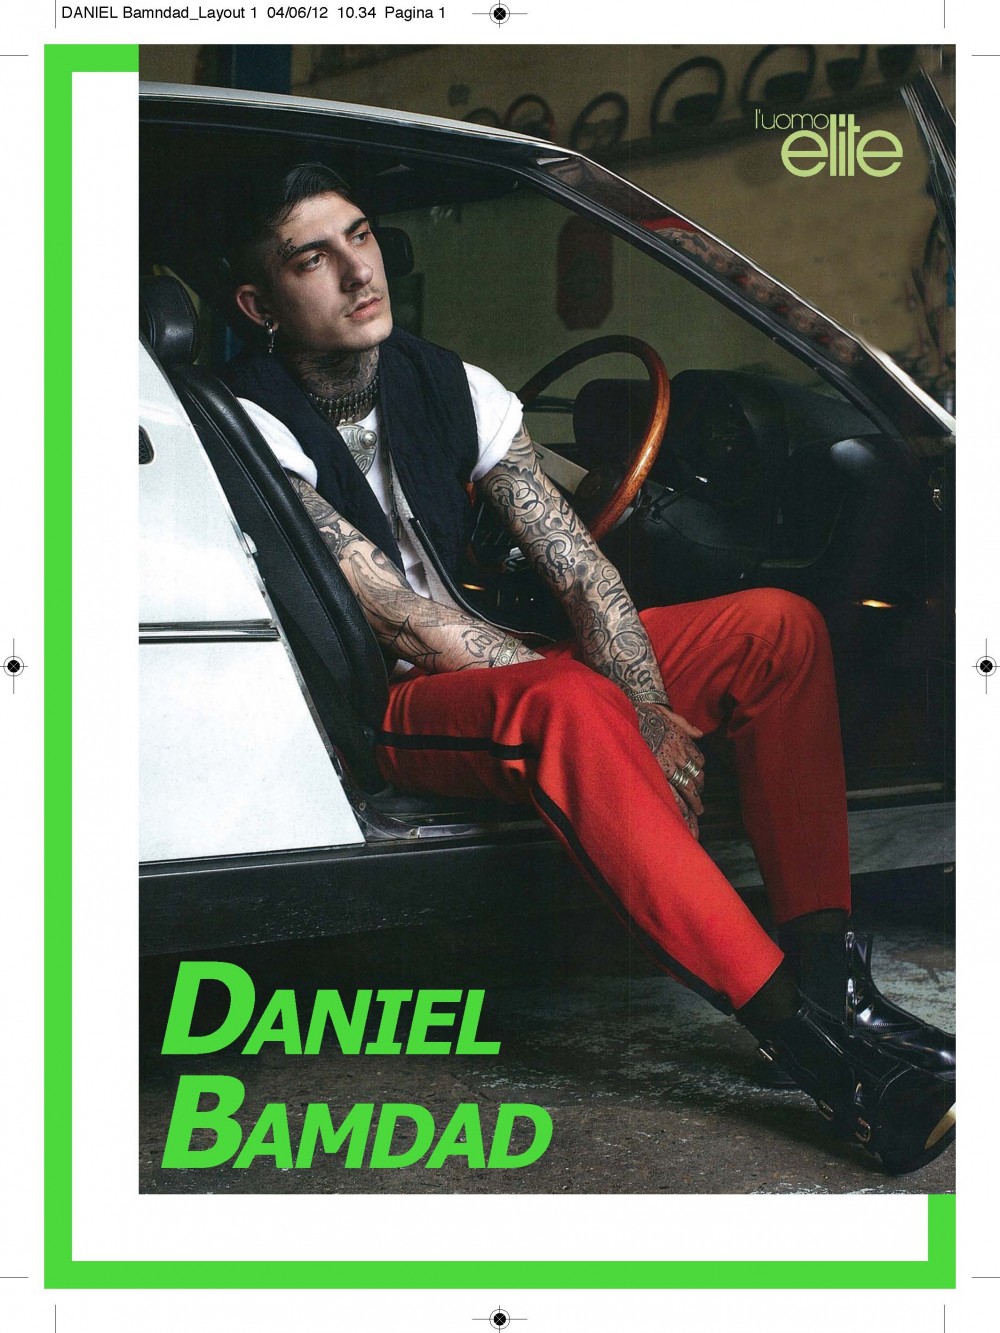 Daniel Bamdad